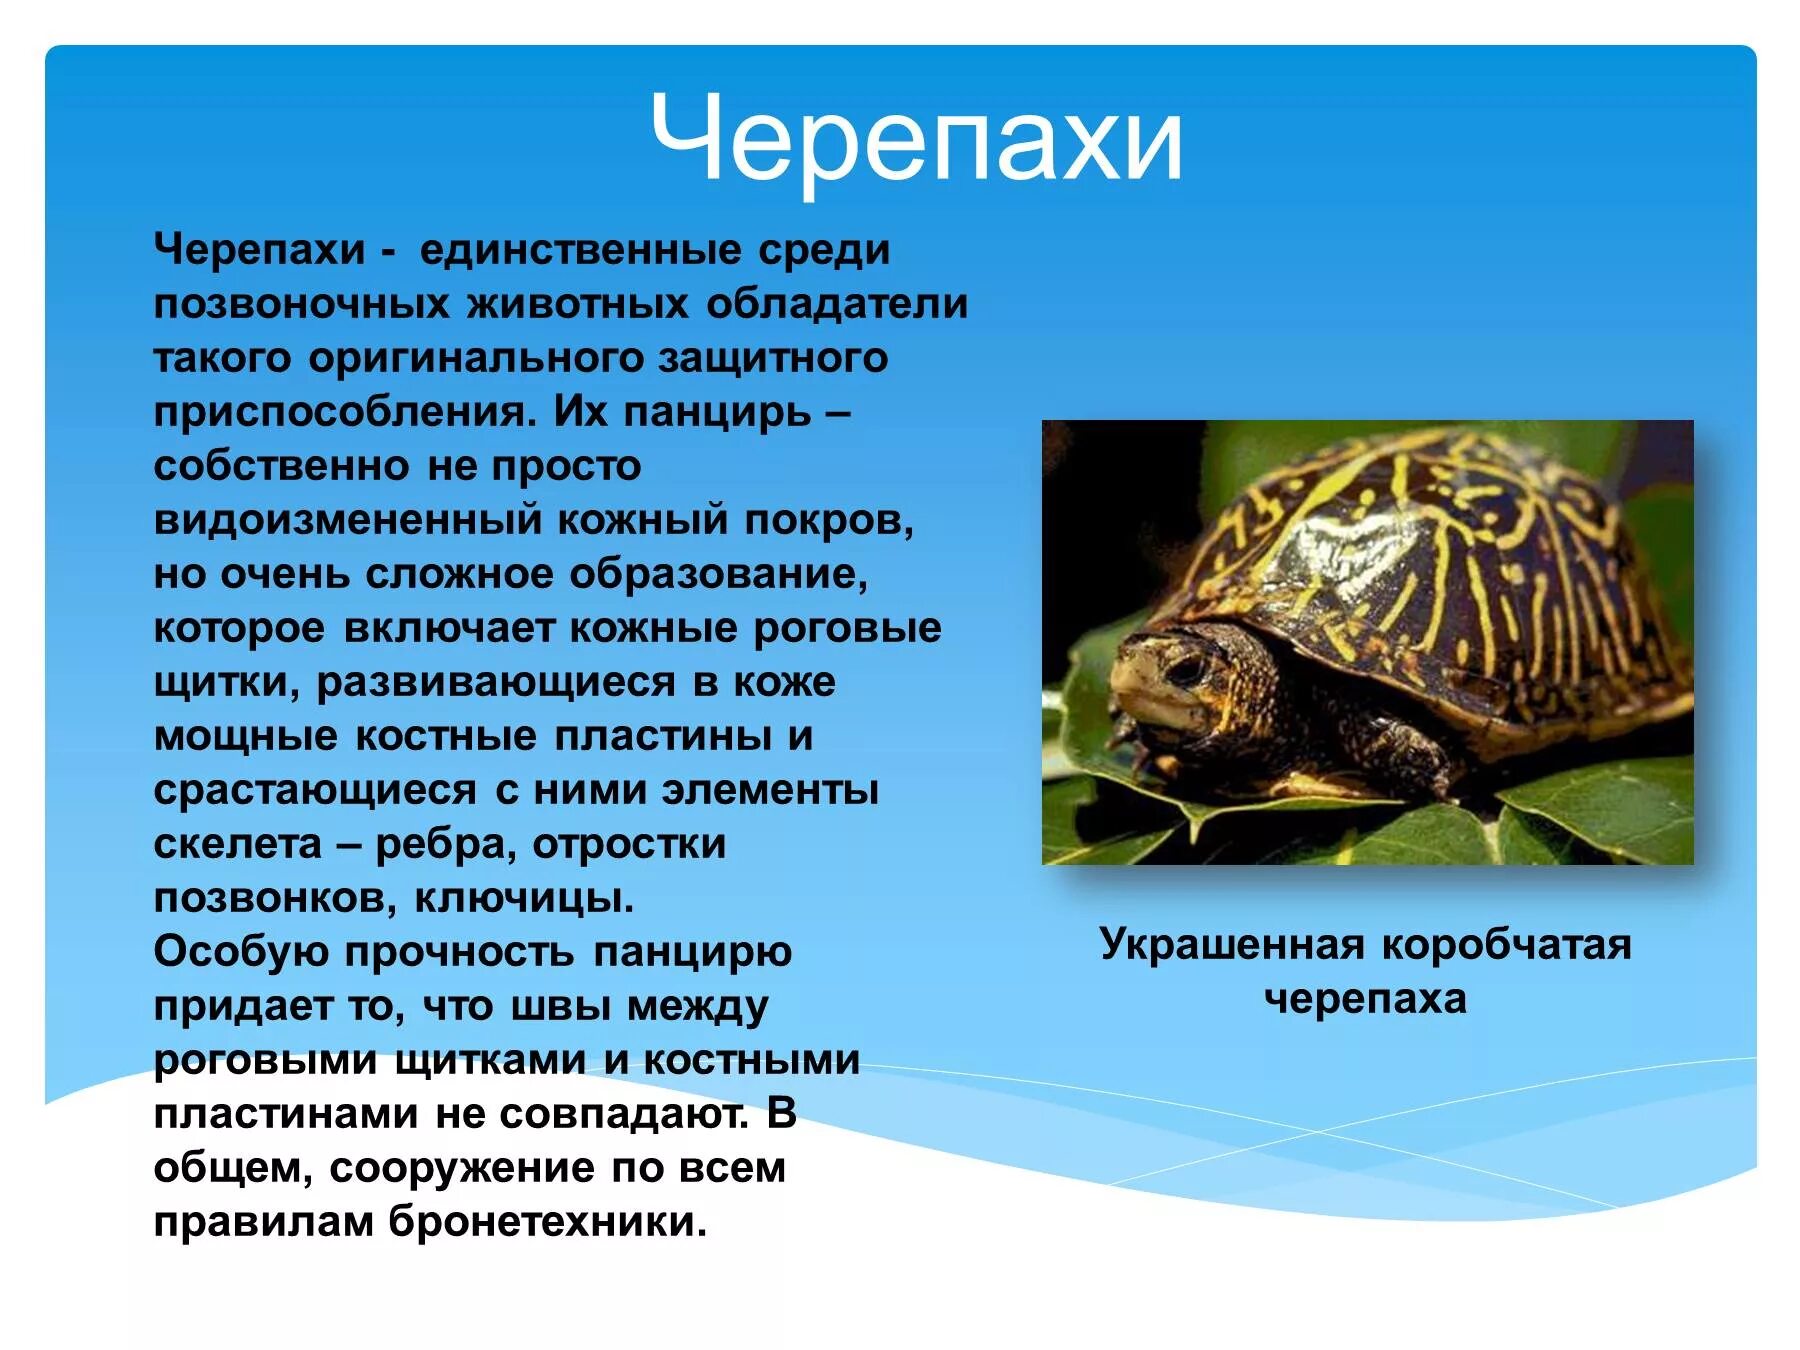 Защита позвоночных животных. Презентация на тему черепахи. Позвоночные животные. Информация о черепахе. Пресноводные черепахи презентация.